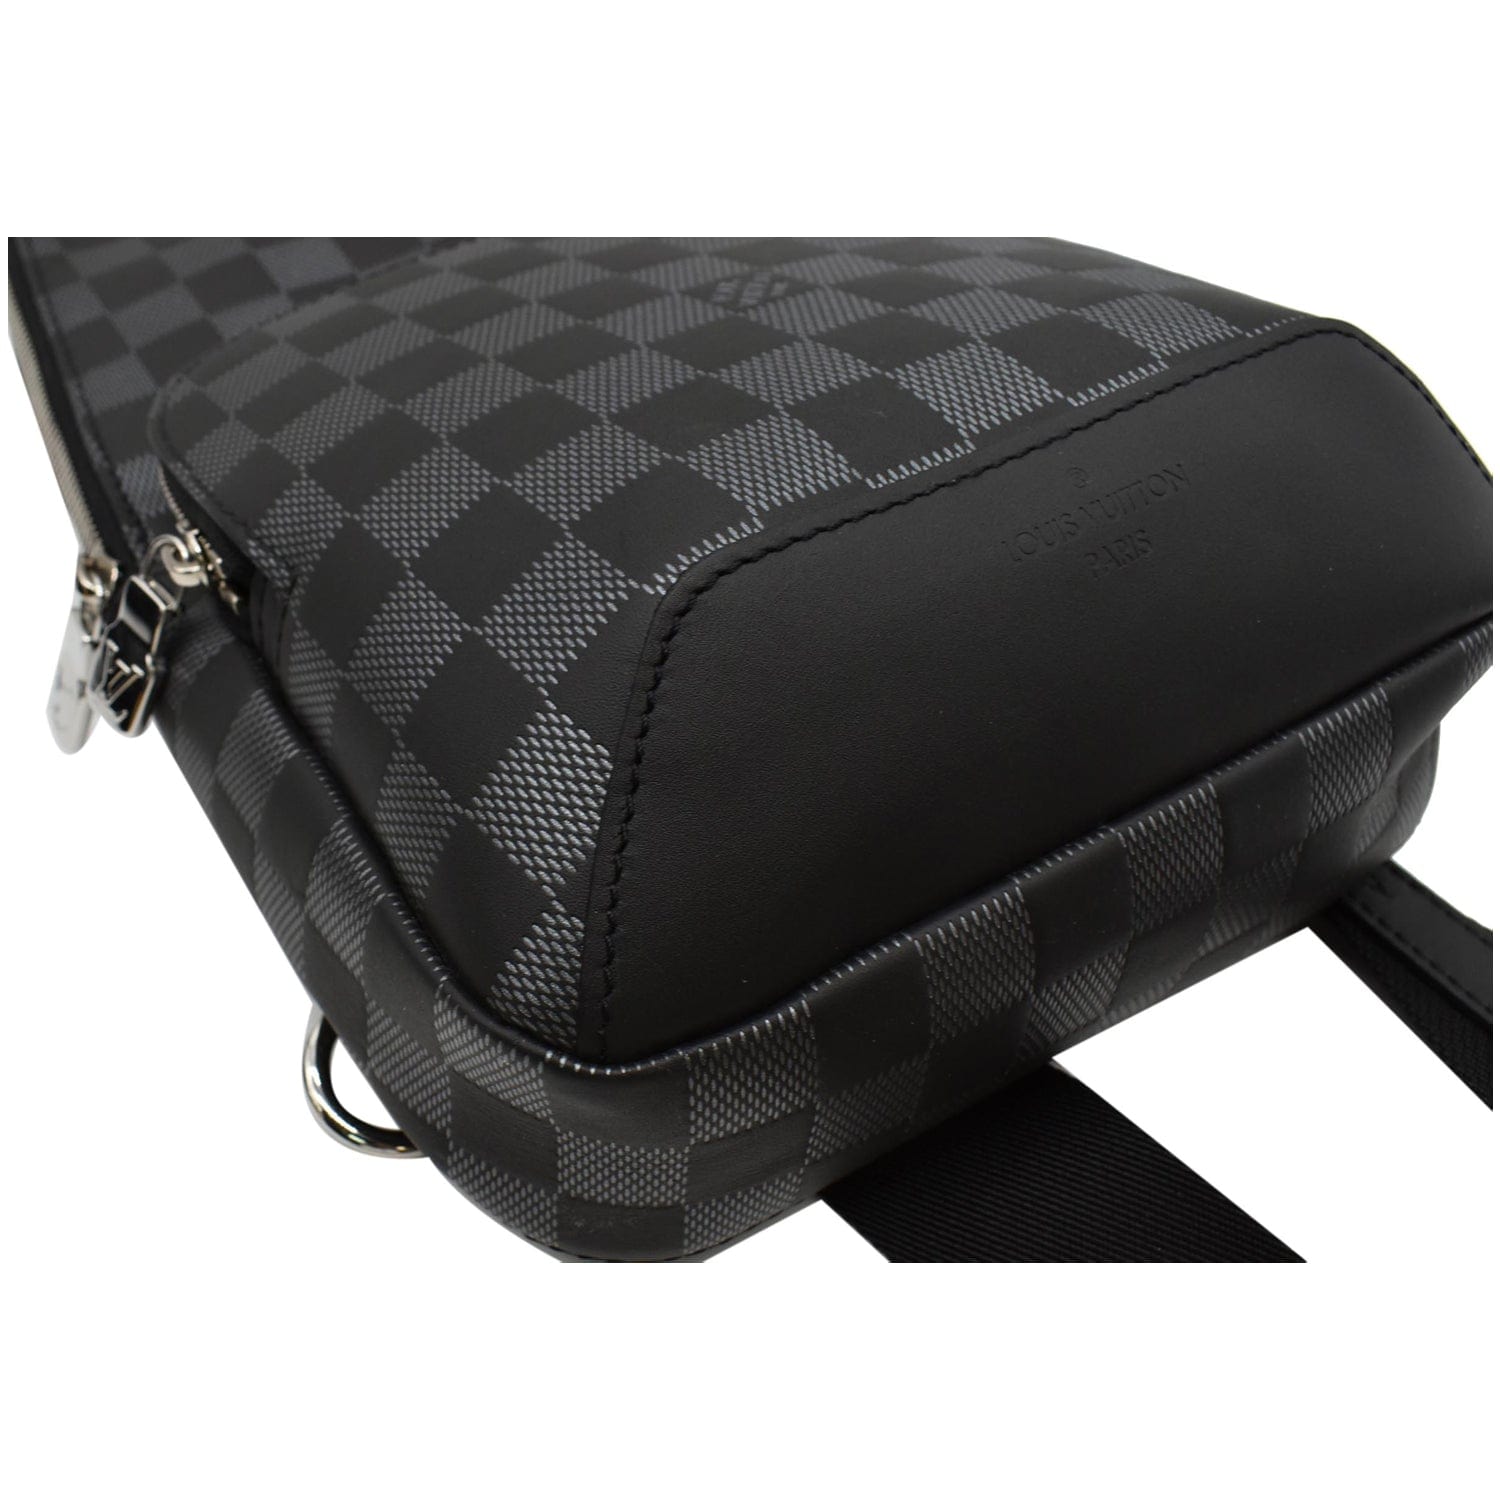 Authentic Louis Vuitton Damier Graphite 3D e Sling Bag Black